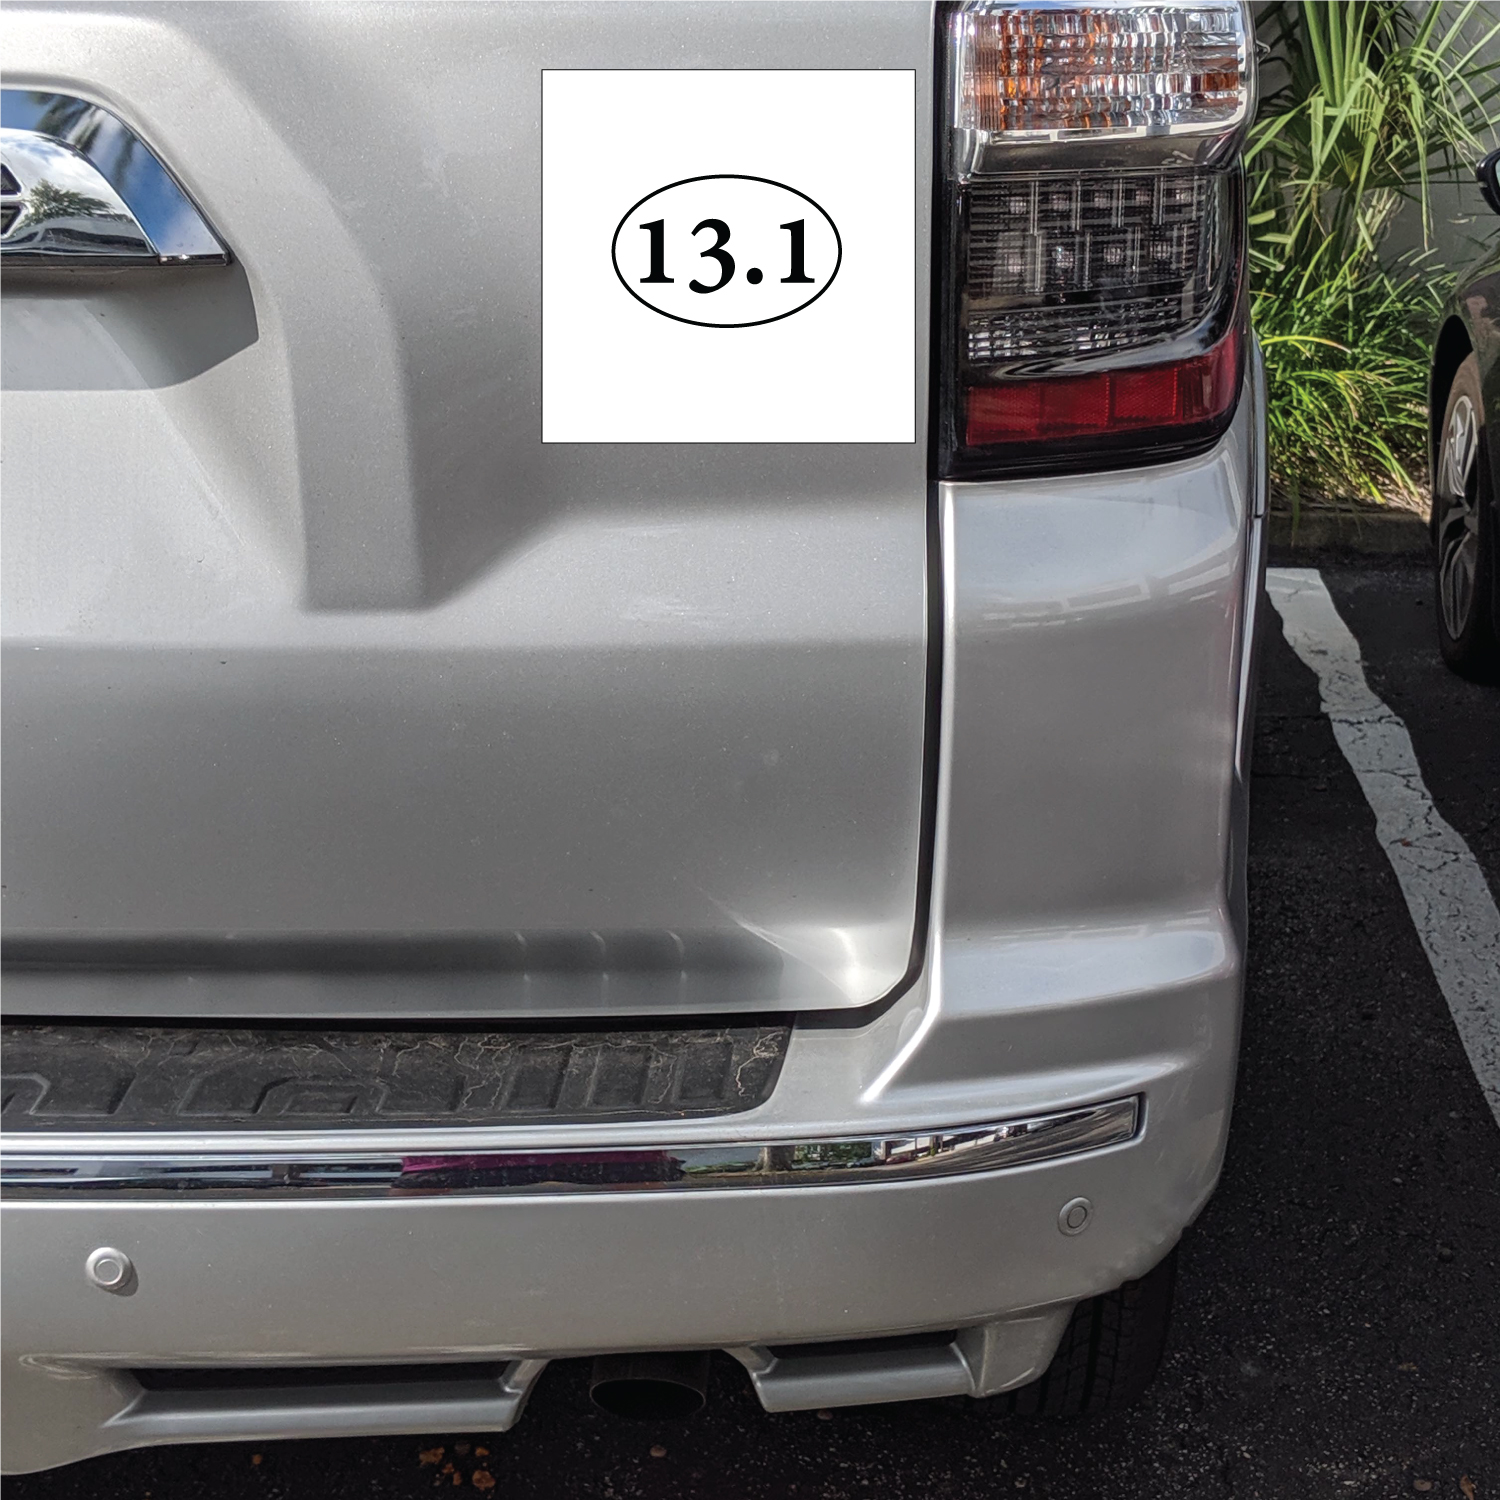 DistinctInk Custom Bumper Sticker - 3" x 3" Decorative Decal - White Background - 13.1 - Half Marathon Sticker - Running - image 2 of 2